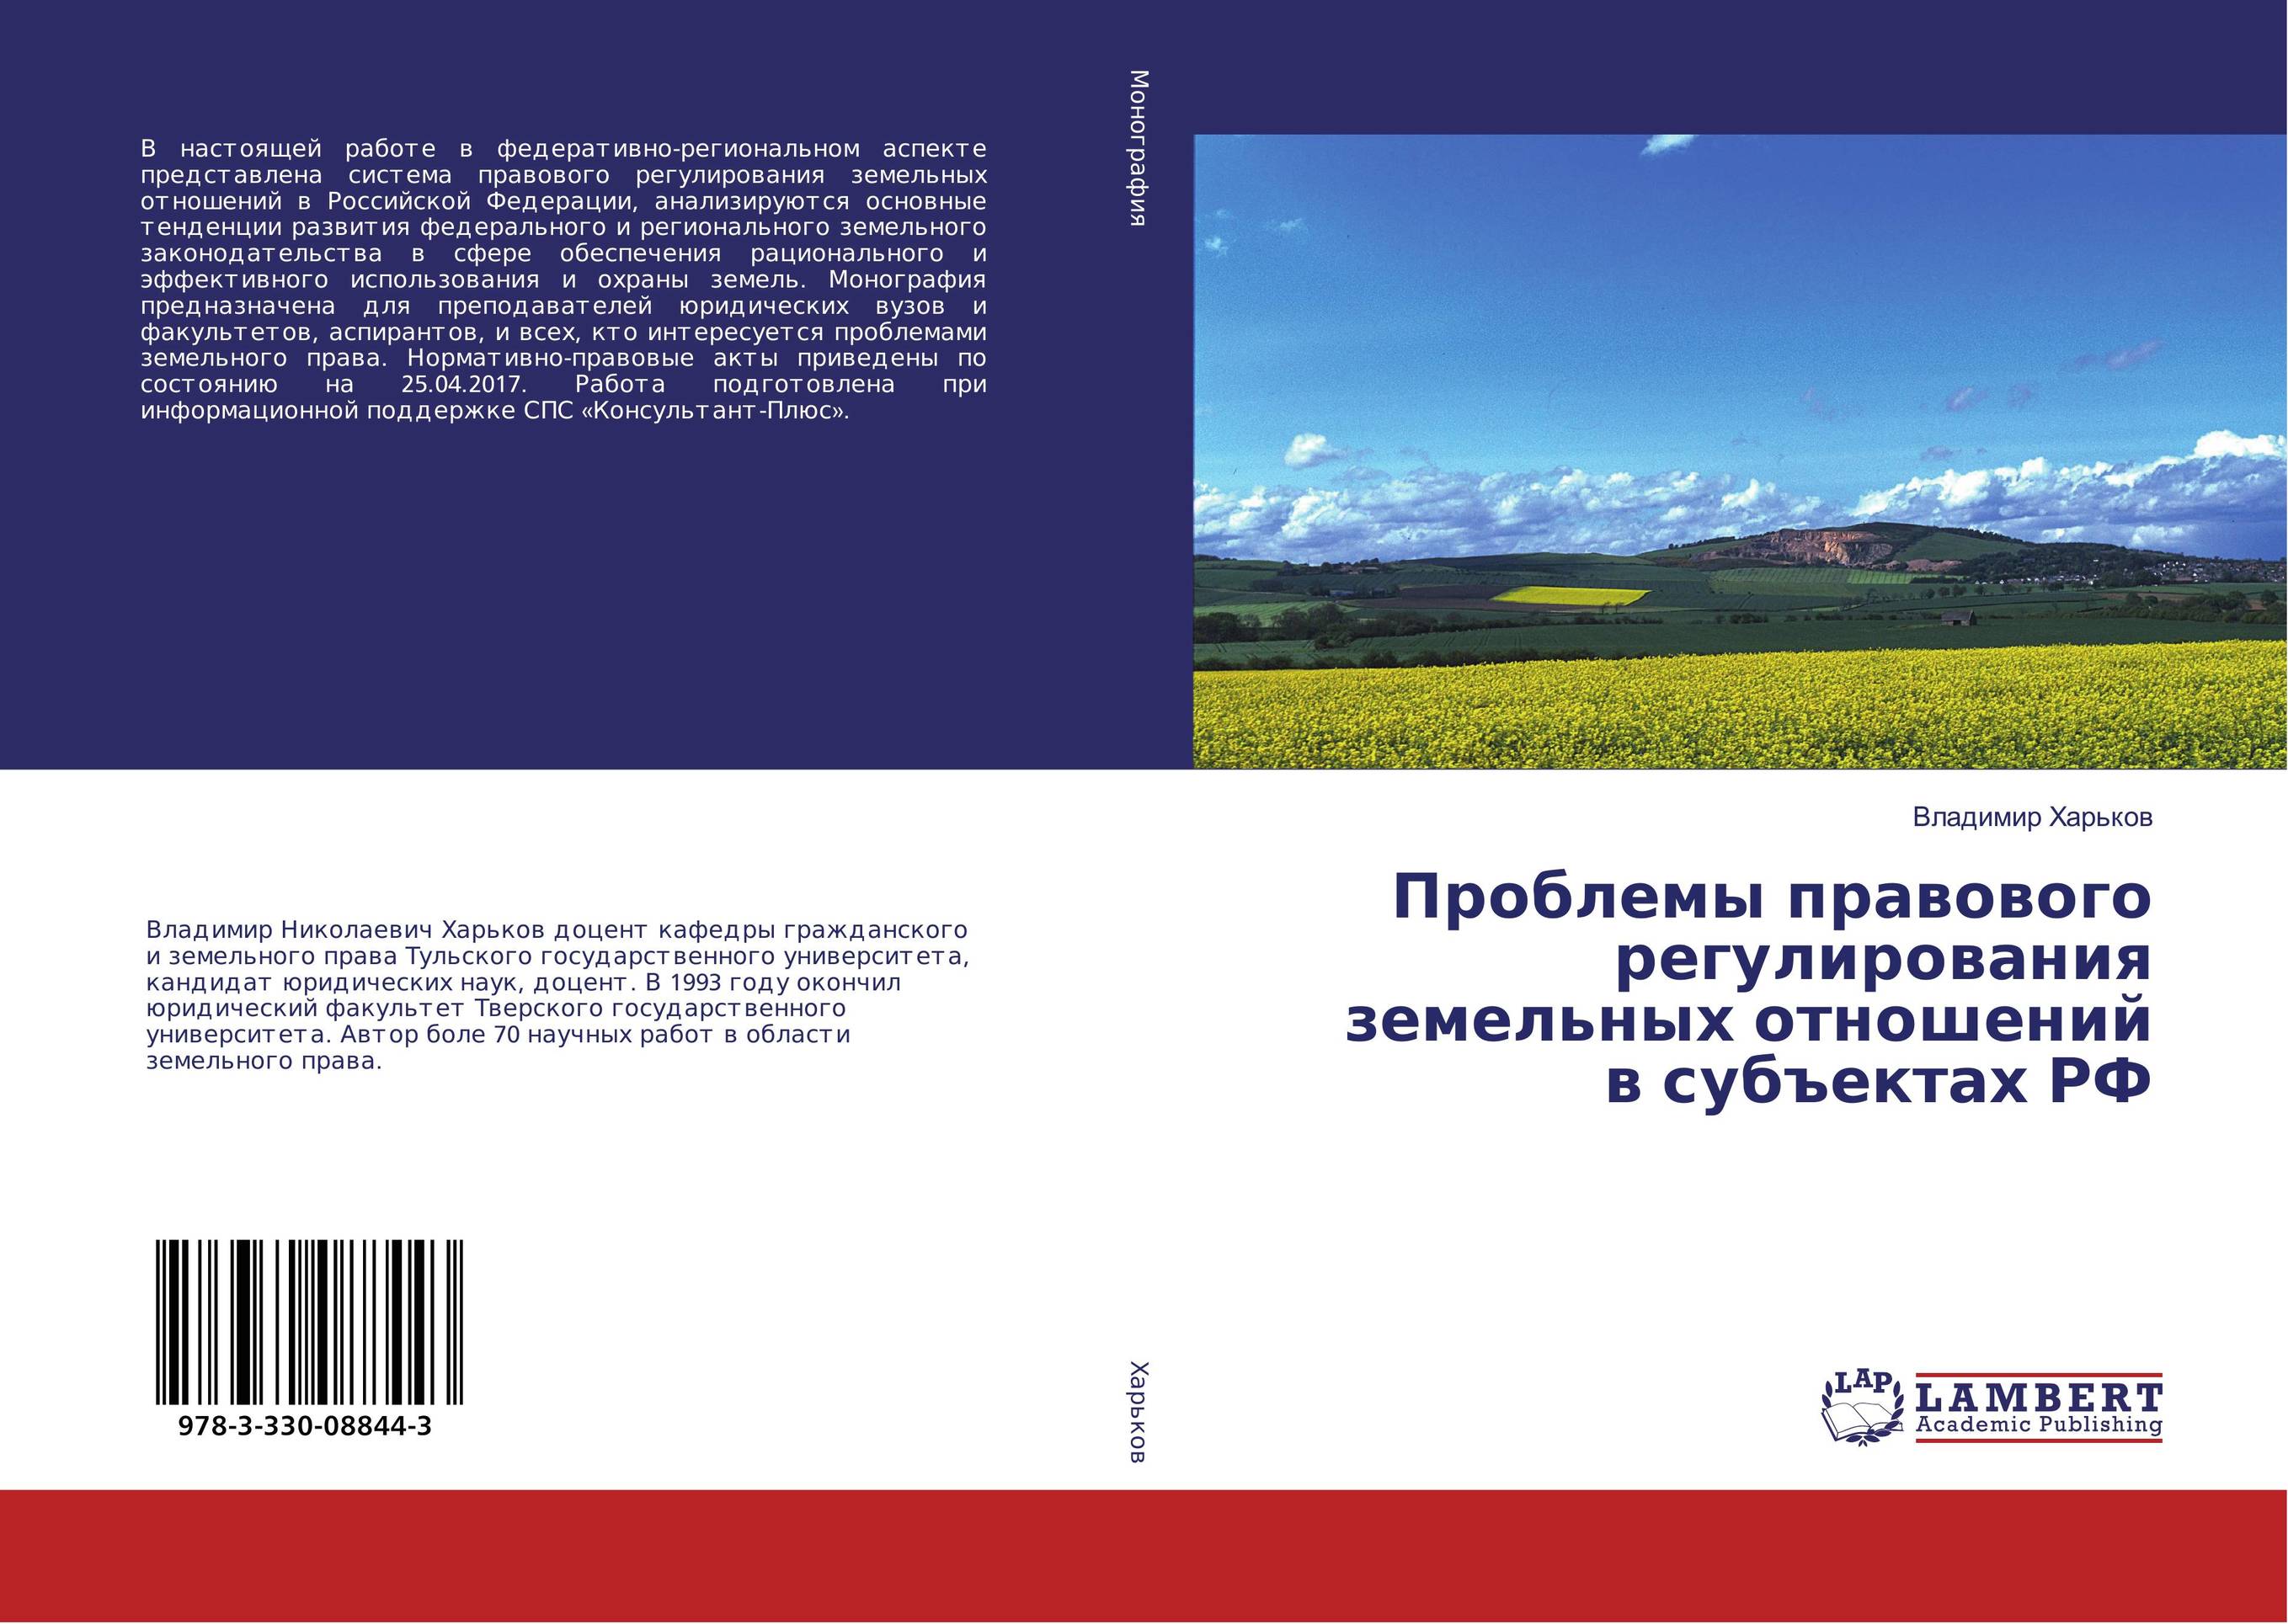 Контрольная работа по теме Правовое регулирование земельных вопросов в Республике Беларусь